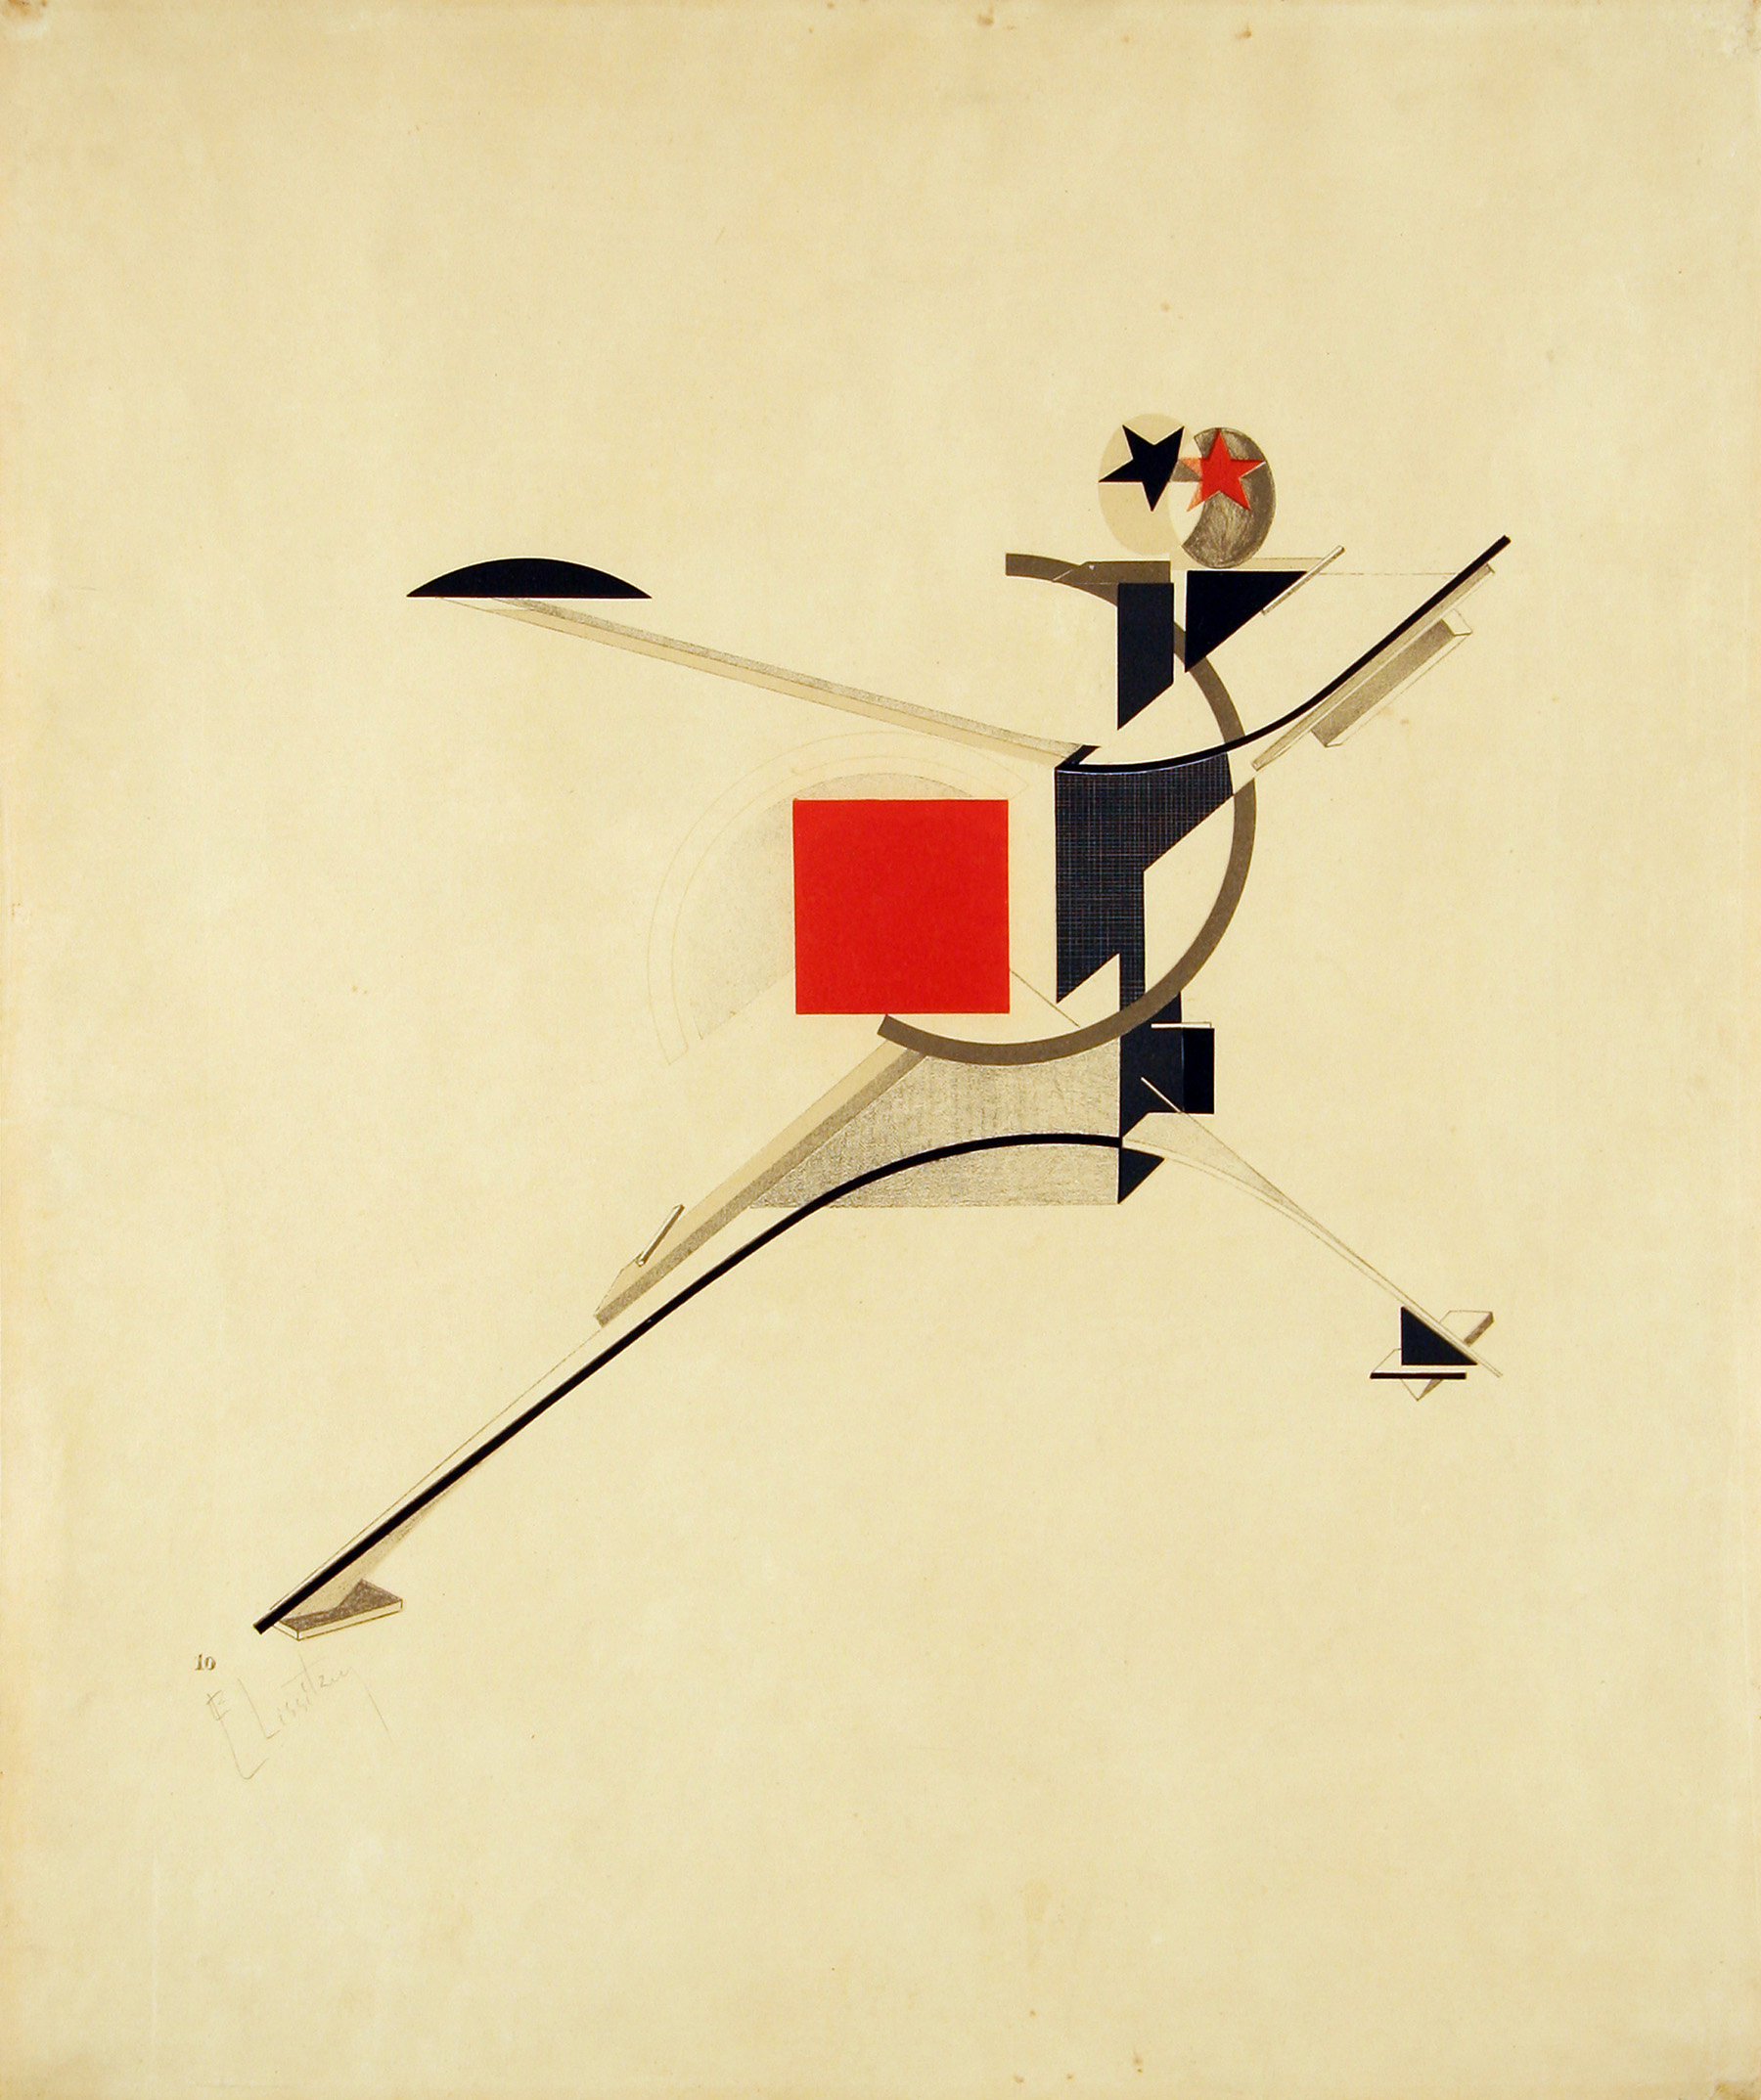 Homme nouveau by El Lissitzky - 1923 - 30.8 x 32.1 cm Museum of Modern Art